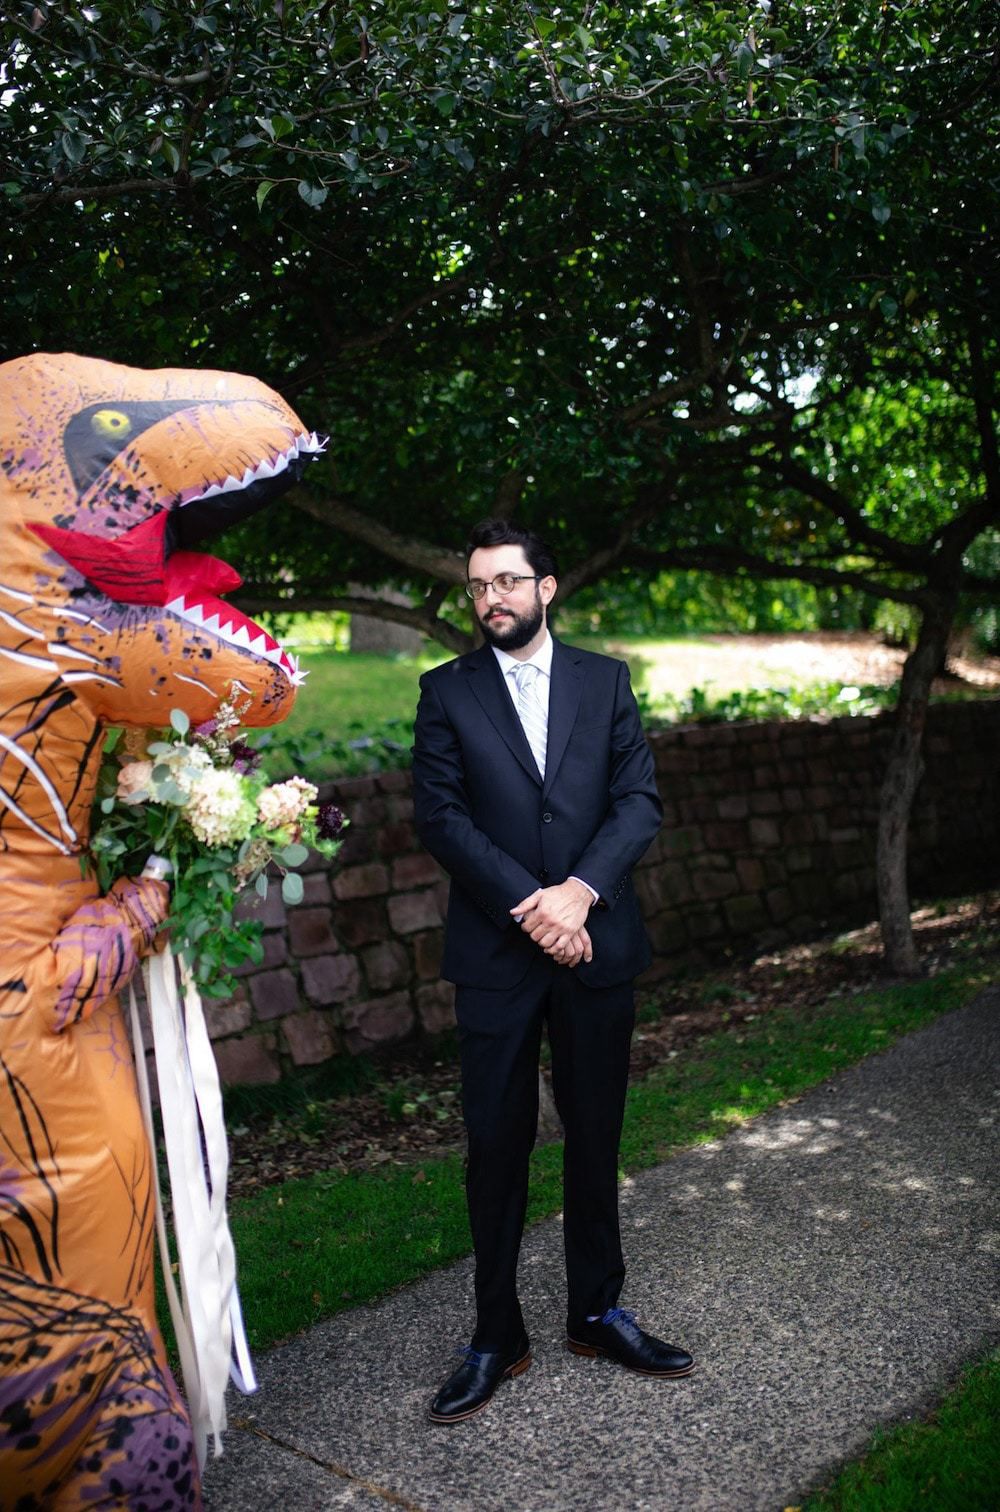 Наречена одягла на весілля гігантський костюм тиранозавра рекса замість шикарного плаття. У них було дуже холоднокровне весілля.